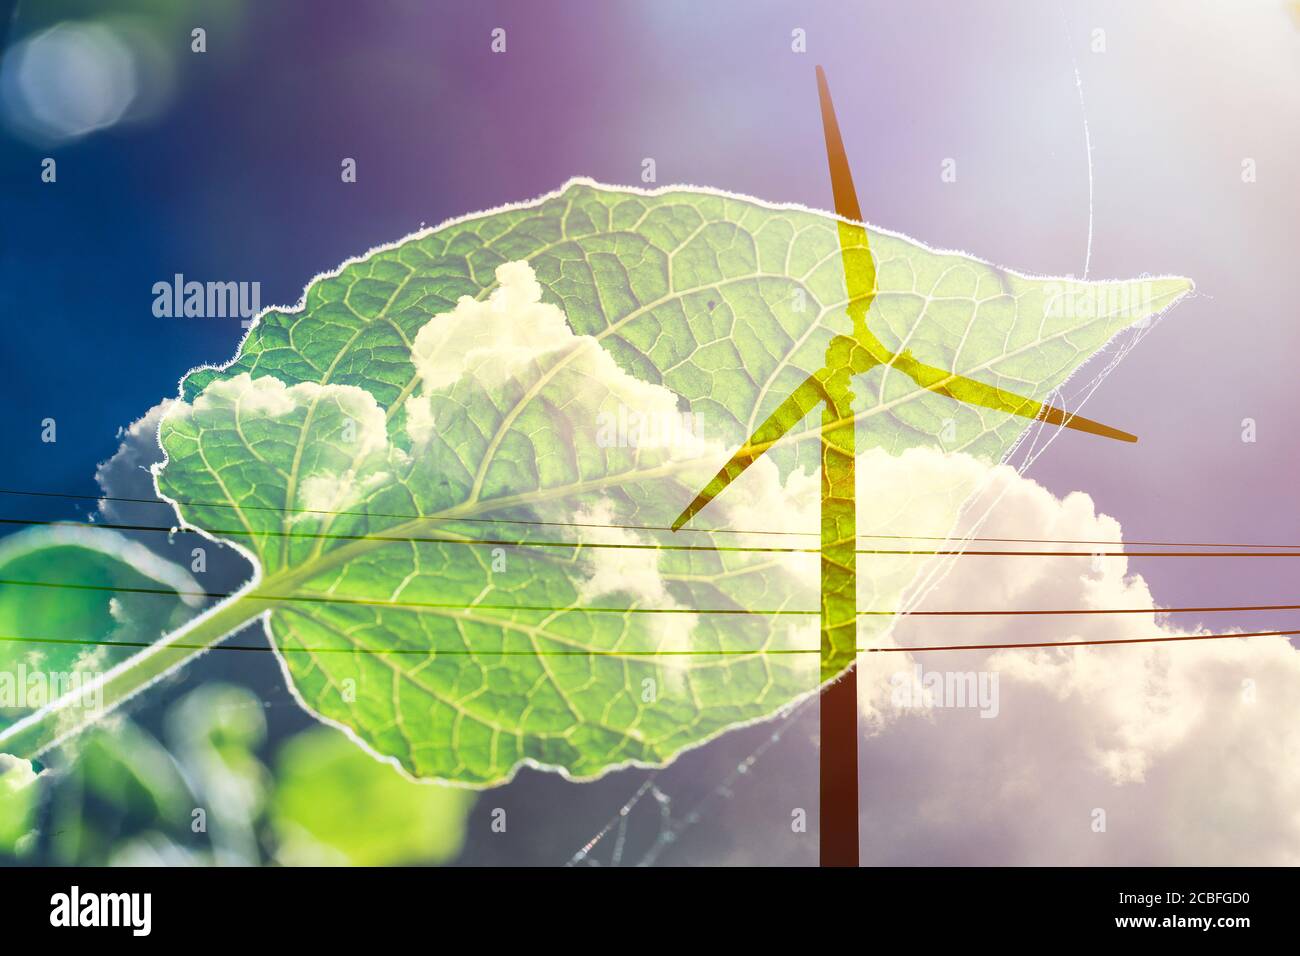 Windturbine auf Wolke Himmel Overlay mit grünen Pflanzenblatt Für umweltverträglichen Energieerzeuger und umweltfreundliche Energieerzeugung Konzept Stockfoto